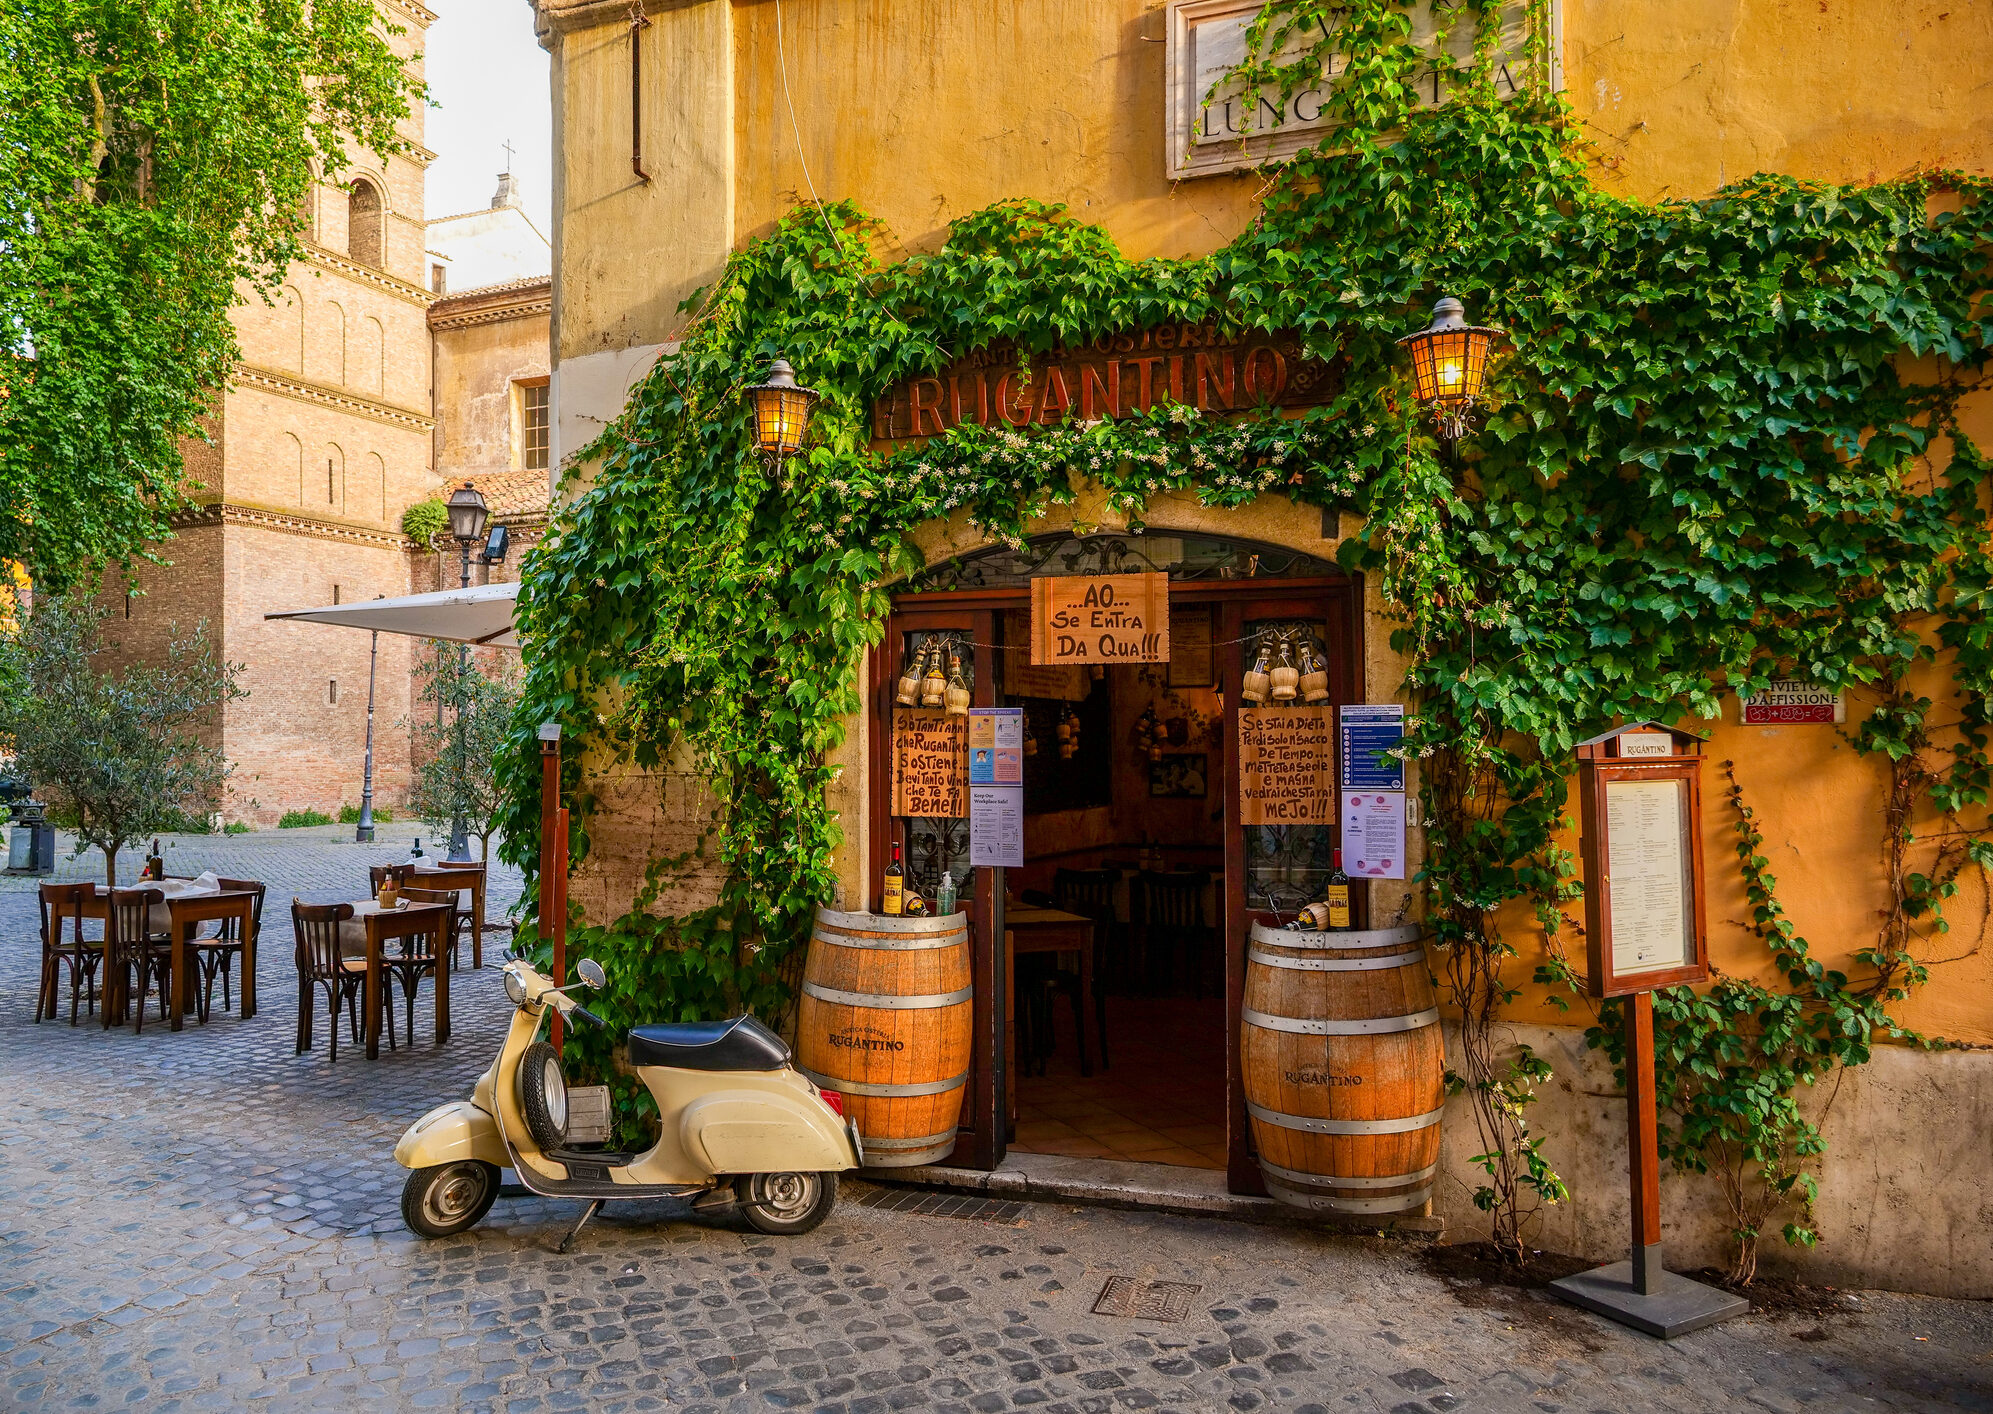 San Marco a la Milanese, le chef-d'œuvre du café italien – Café San Marco